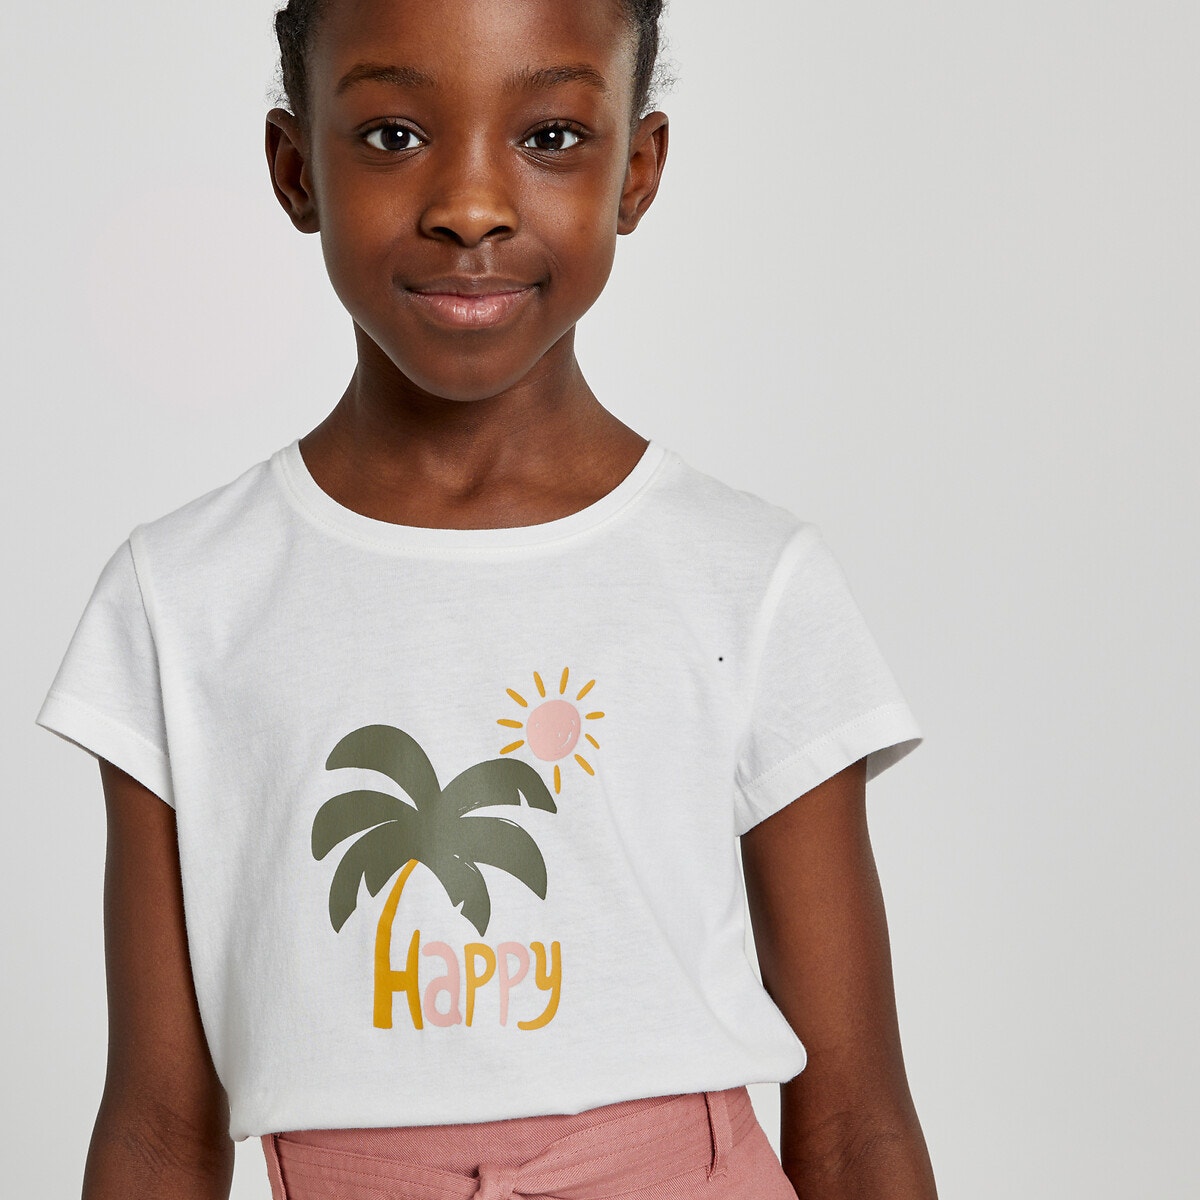 Μόδα > Παιδικά > Κορίτσι > T-shirt, αμάνικες μπλούζες > Κοντομάνικες μπλούζες Σετ 5 T-shirt με στρογγυλή λαιμόκοψη